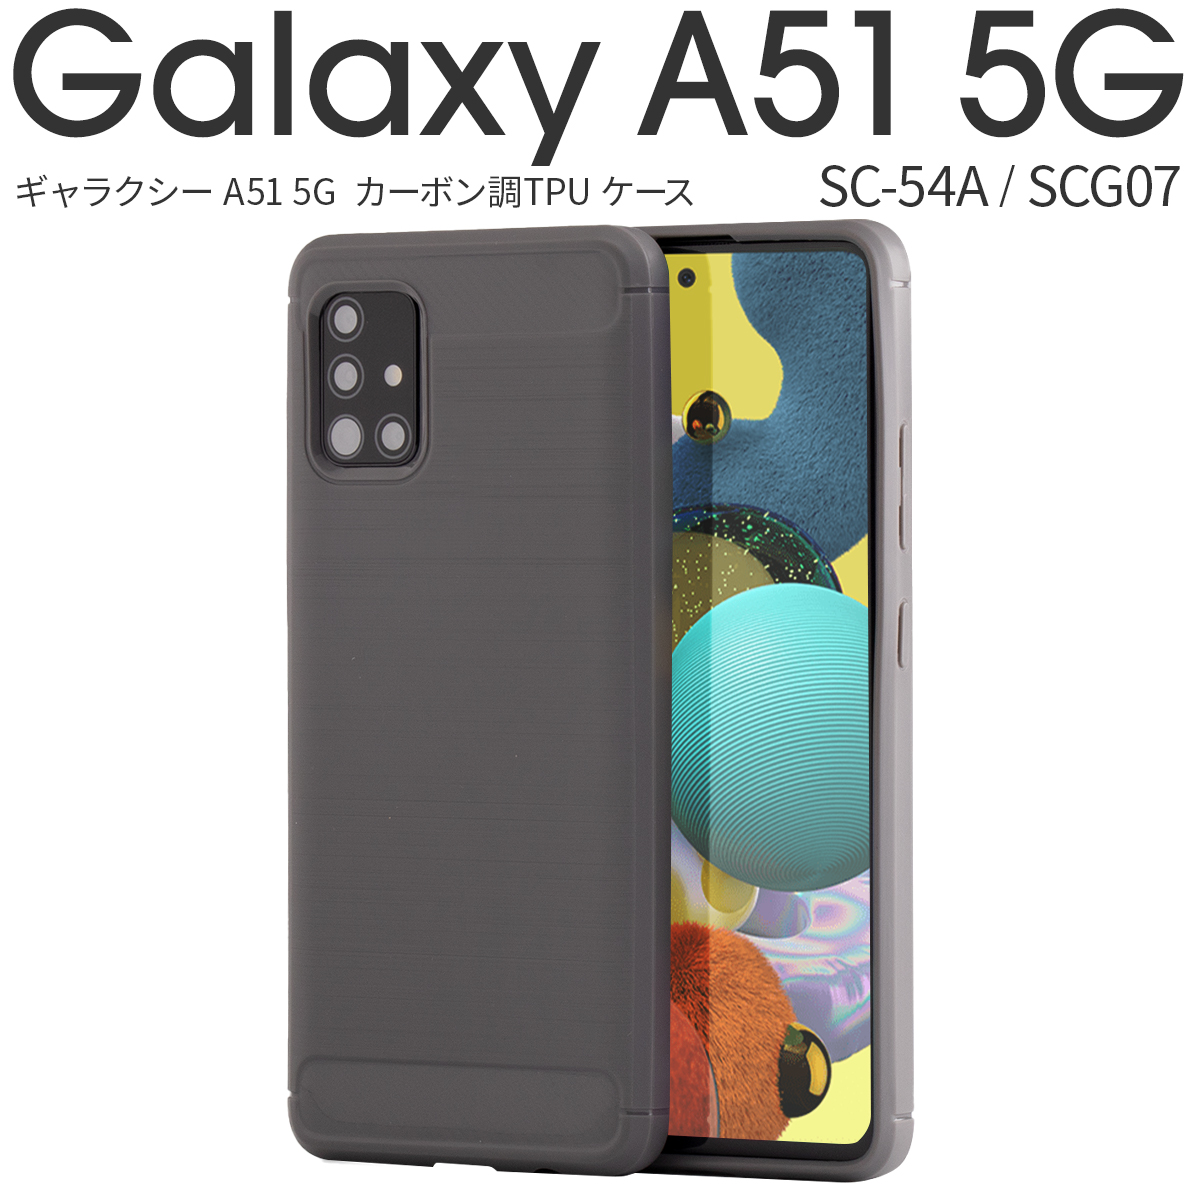 Galaxy A51 5G SCG07 カーボン調TPUケース|スマホケース卸問屋